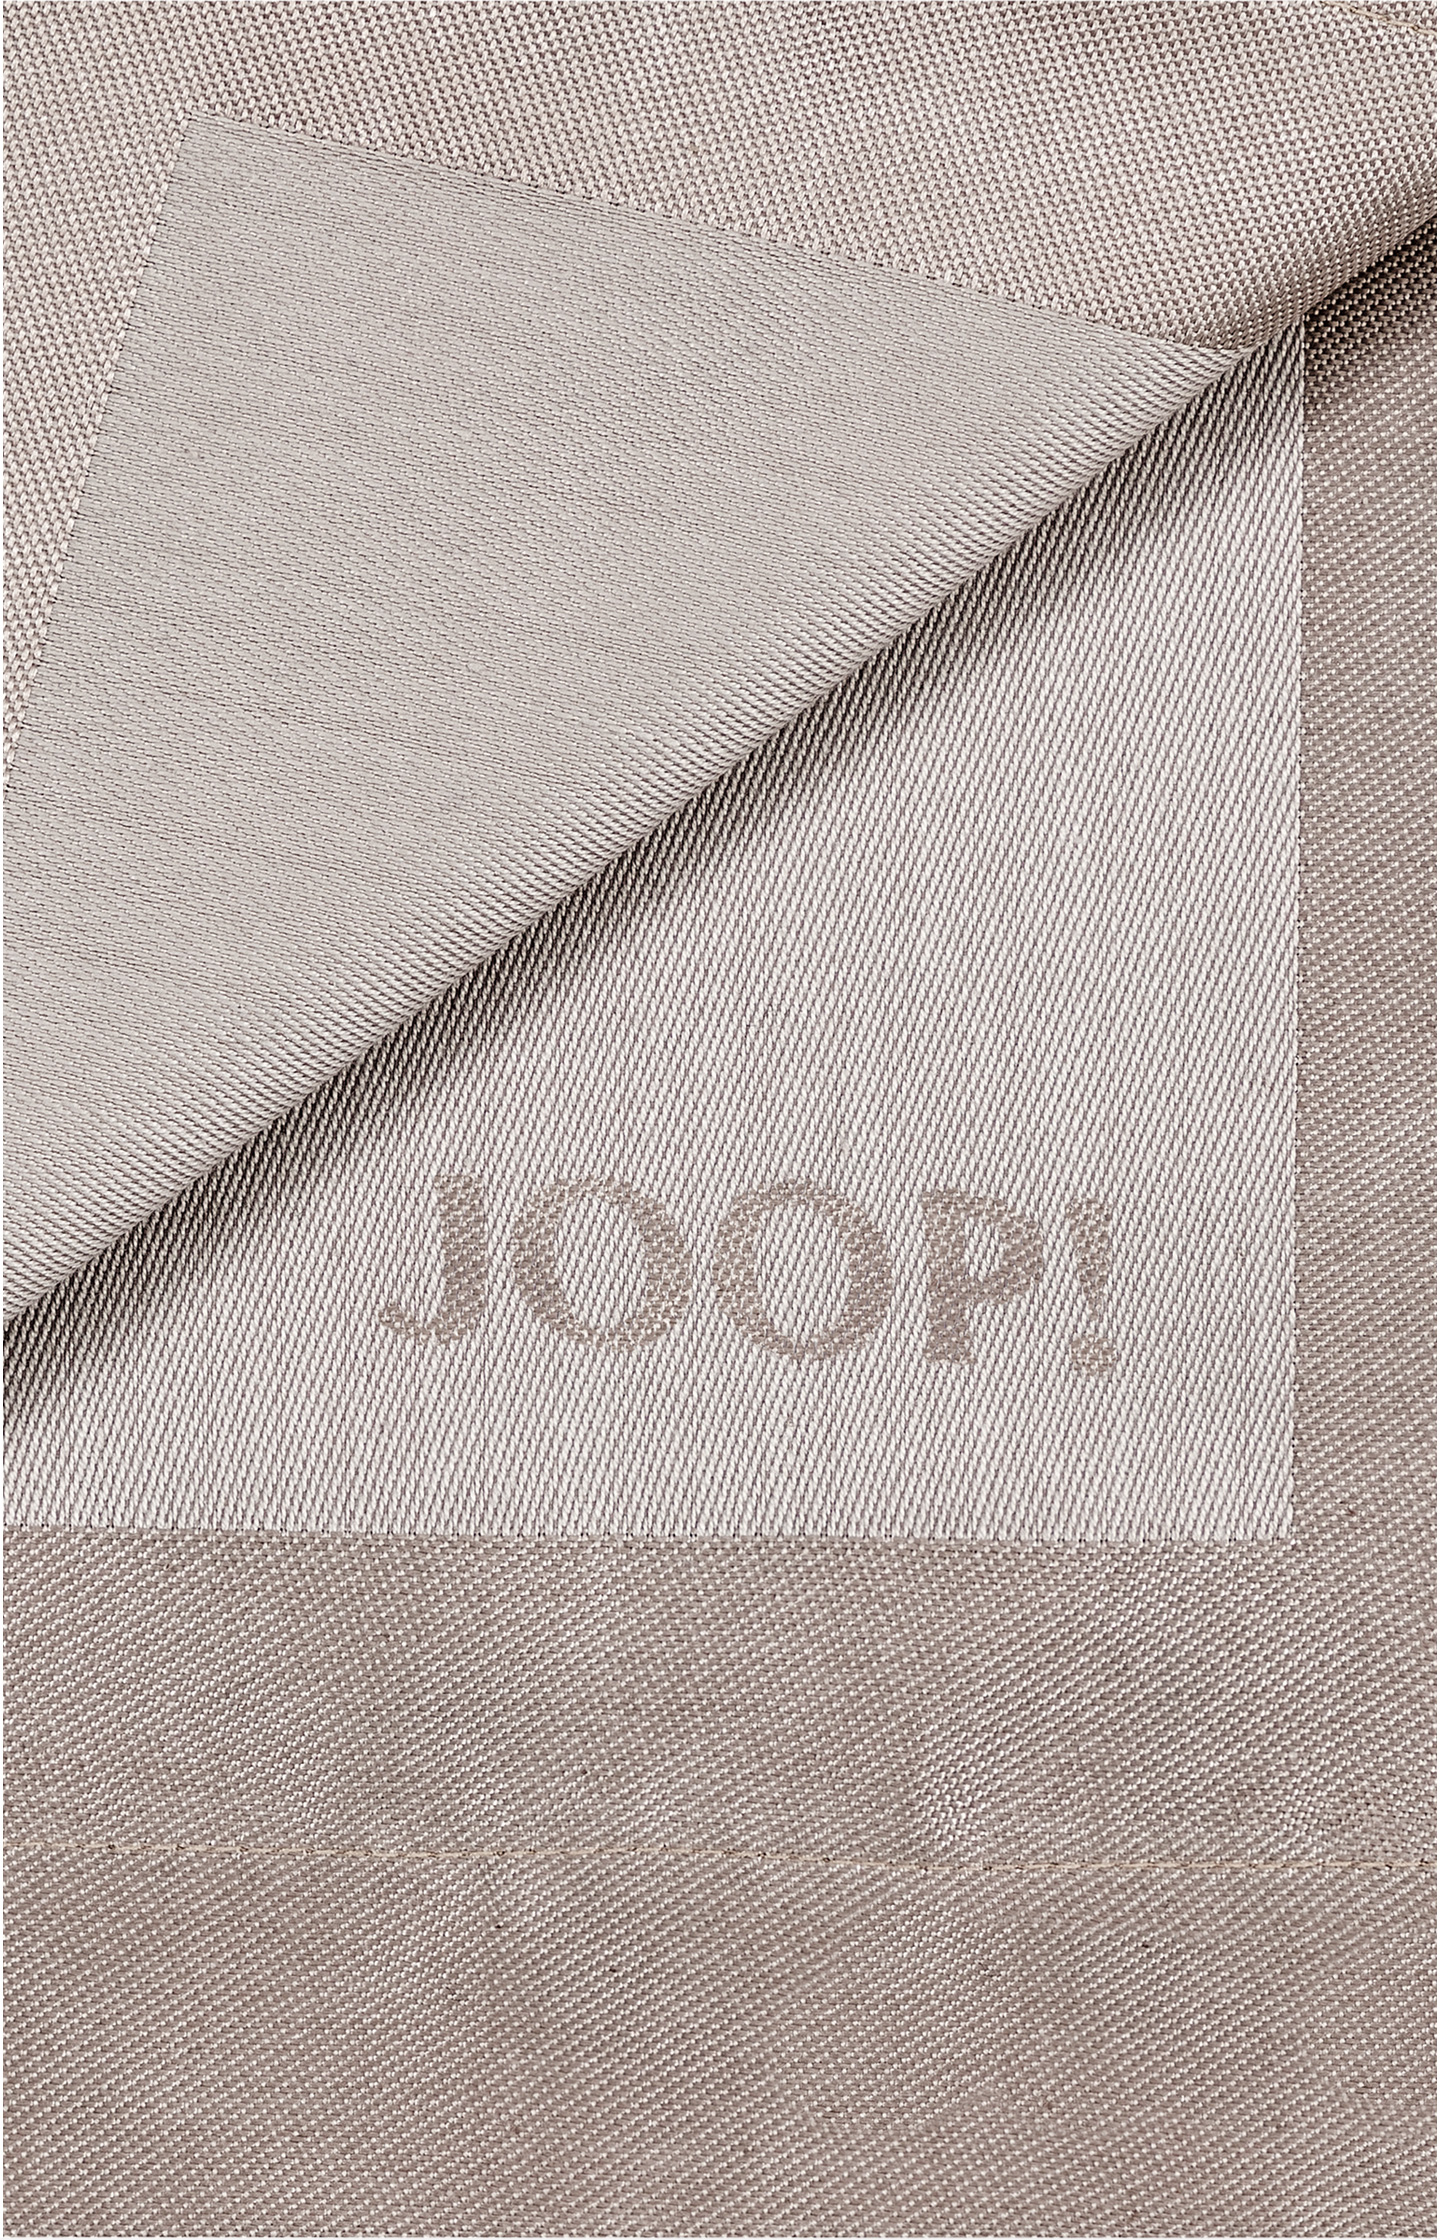 JOOP! Online-Shop - x cm in Platzsets 48 im Set Signature Sand, 2er - JOOP! 36